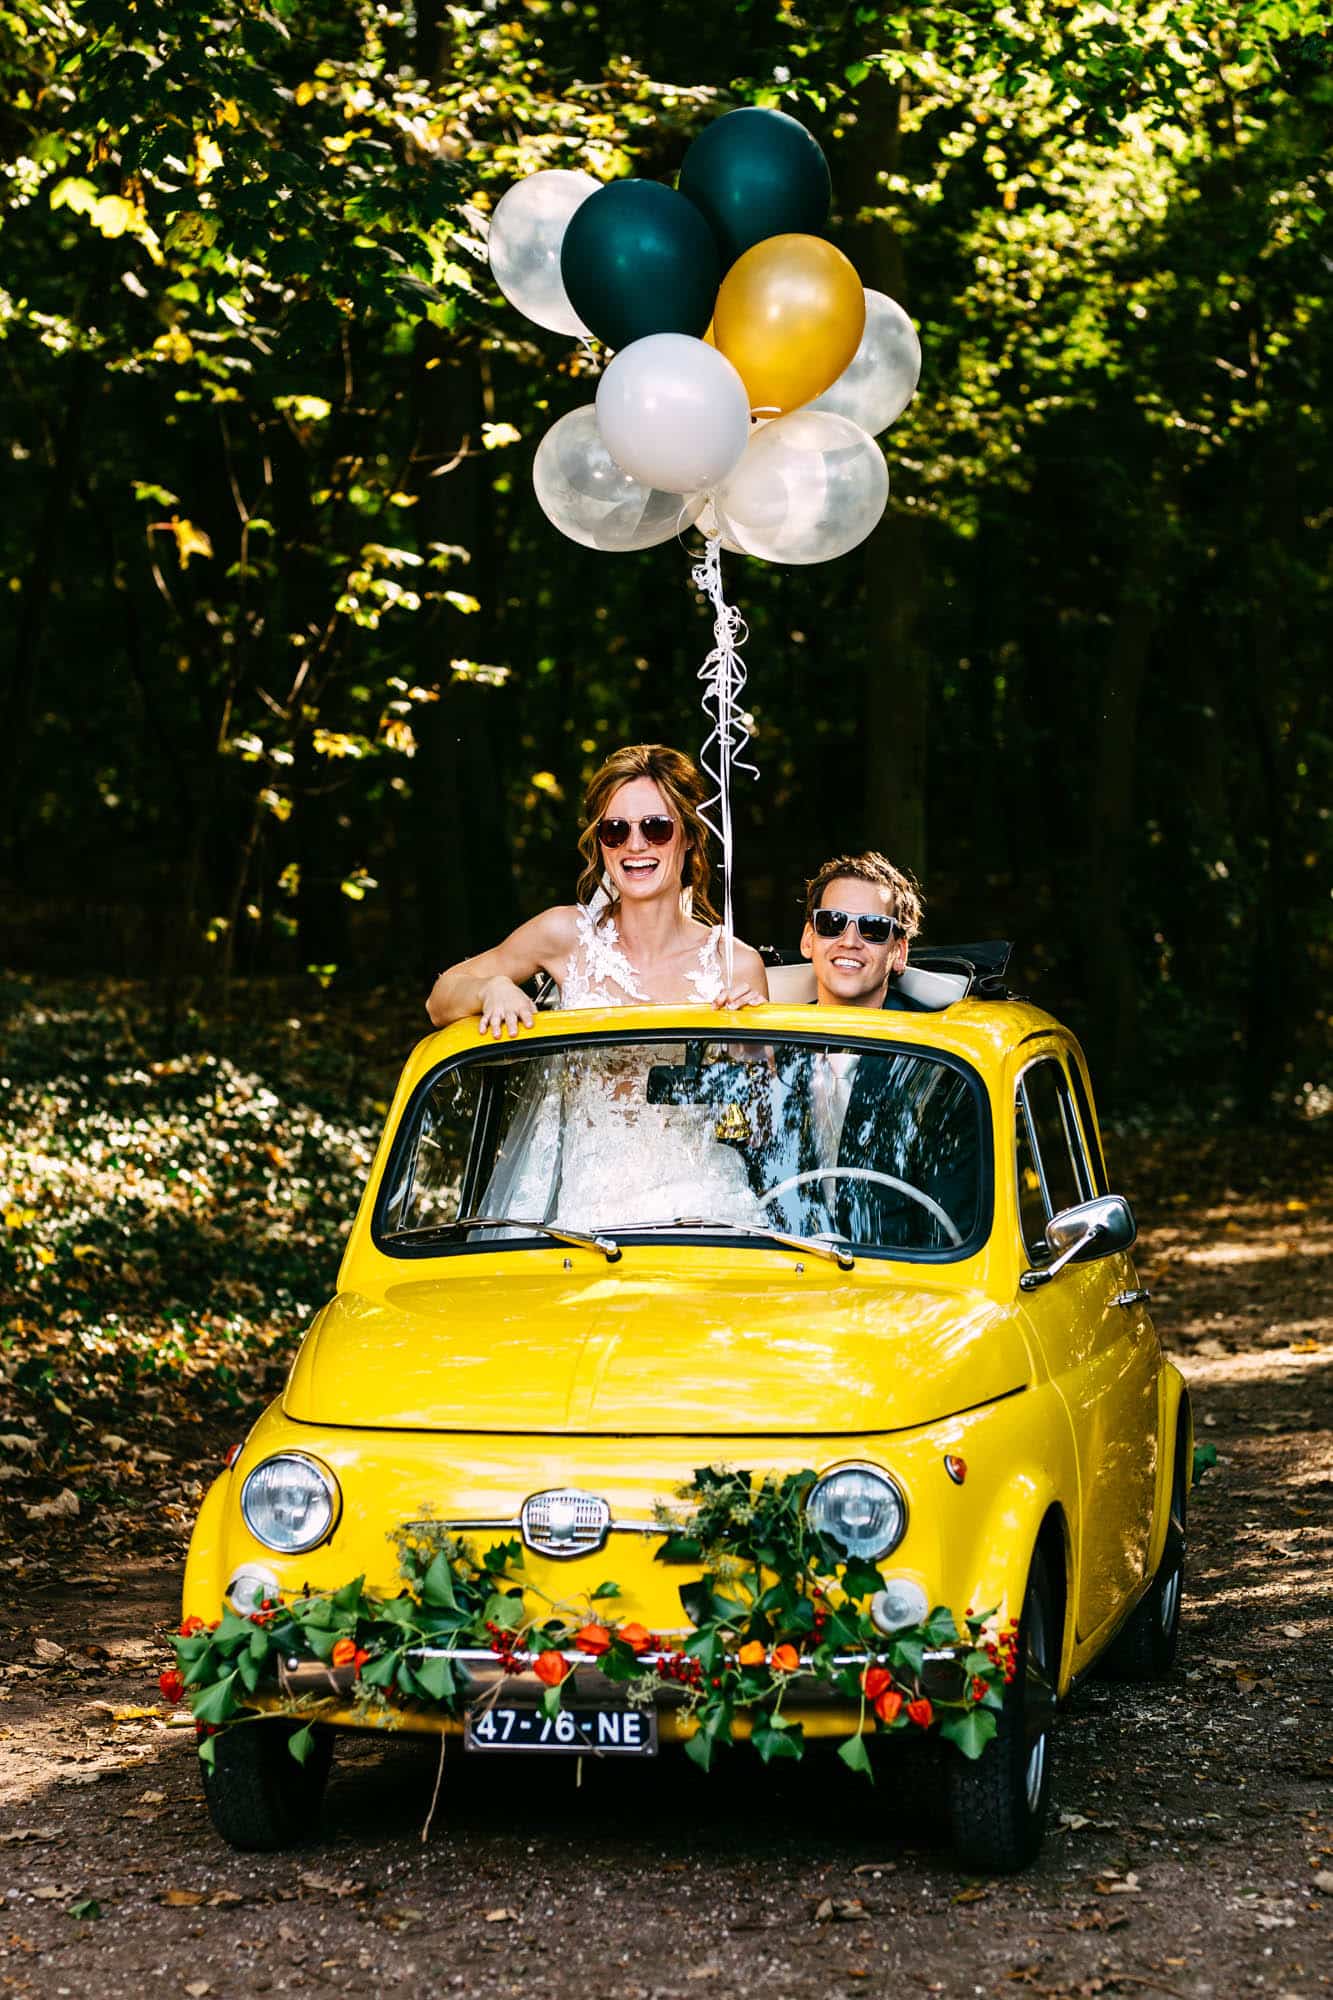 Een bruid en bruidegom in een gele auto met ballonnen vieren hun Trouwen in het bos.